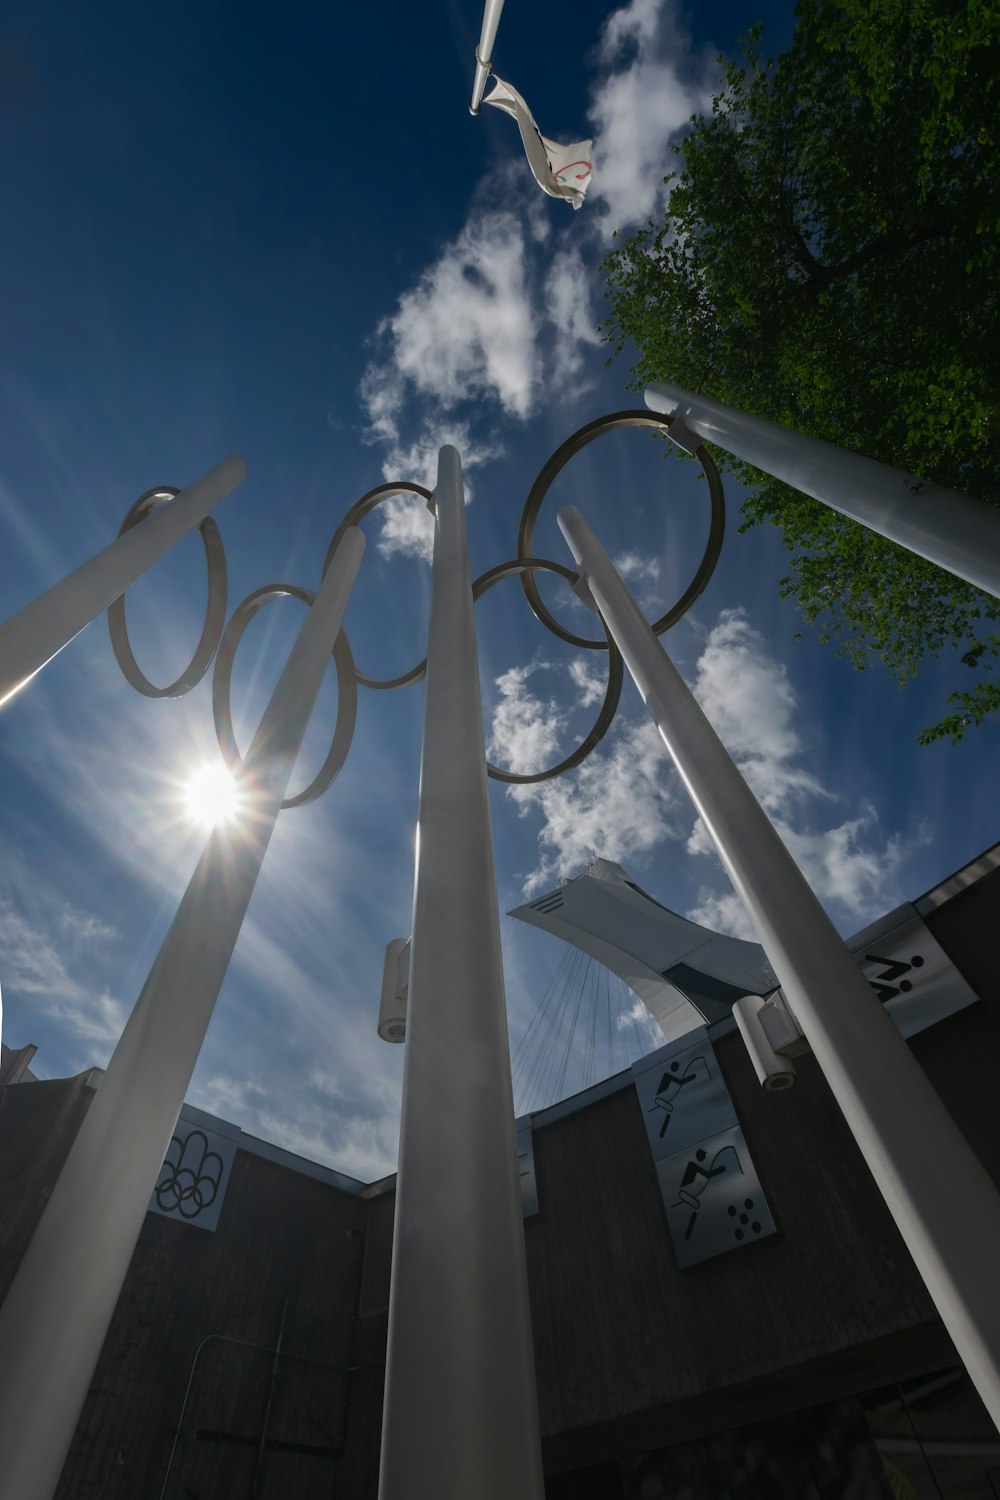 Les anneaux olympiques sont devant un bâtiment